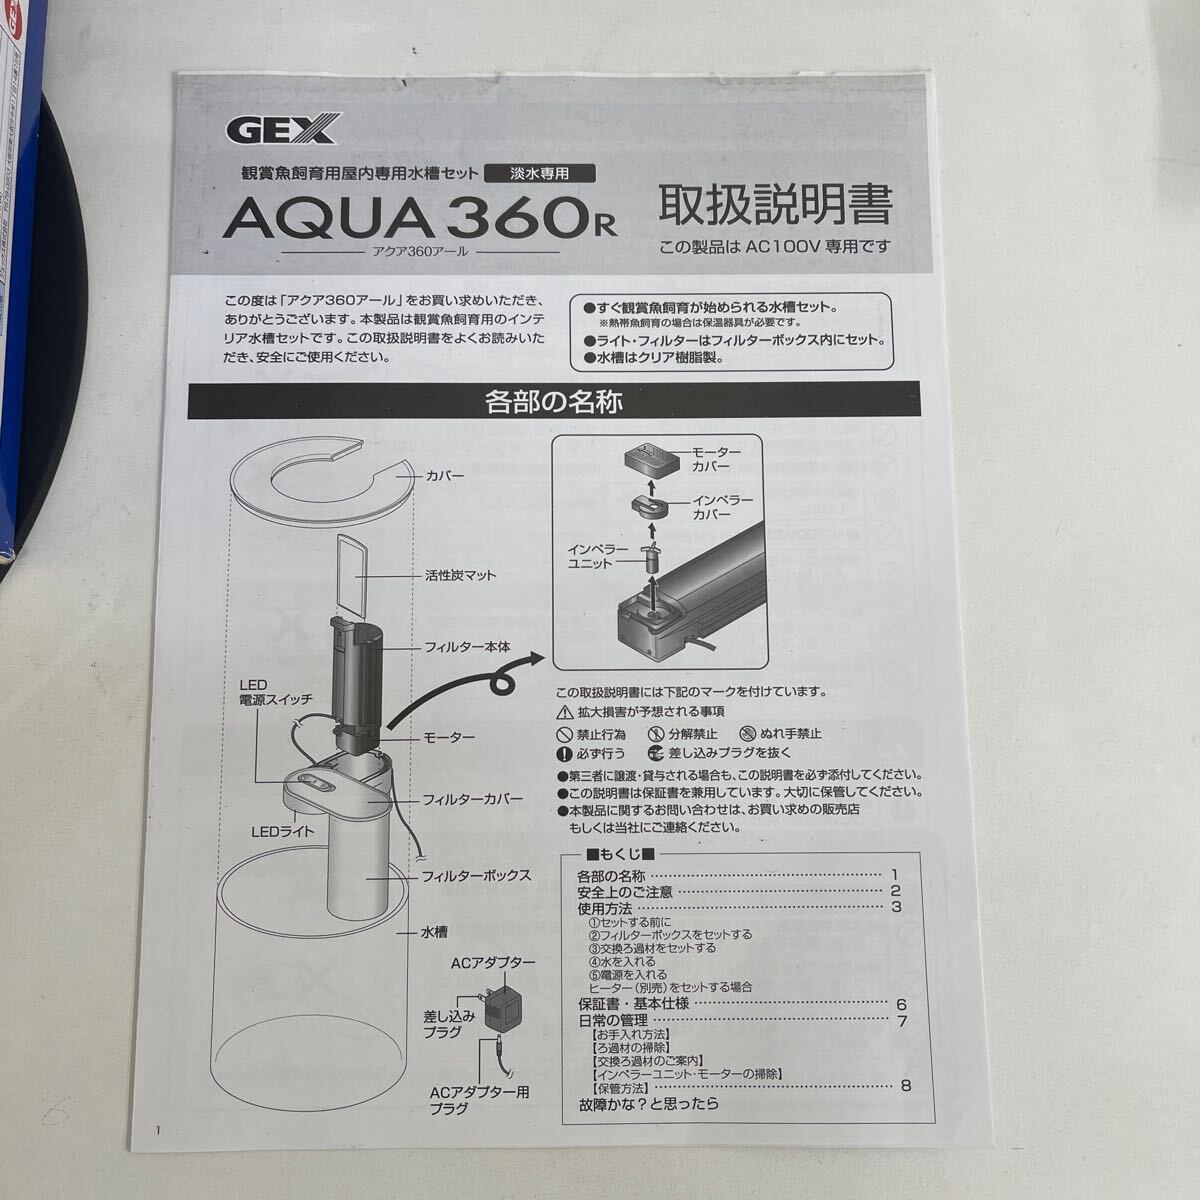 Y317. 5. 未使用品　GEX AQUA 360R ジェックス アクア 360R インテリア水槽 オールインワン水槽. 保管品の為動作確認し、確認OK _画像2